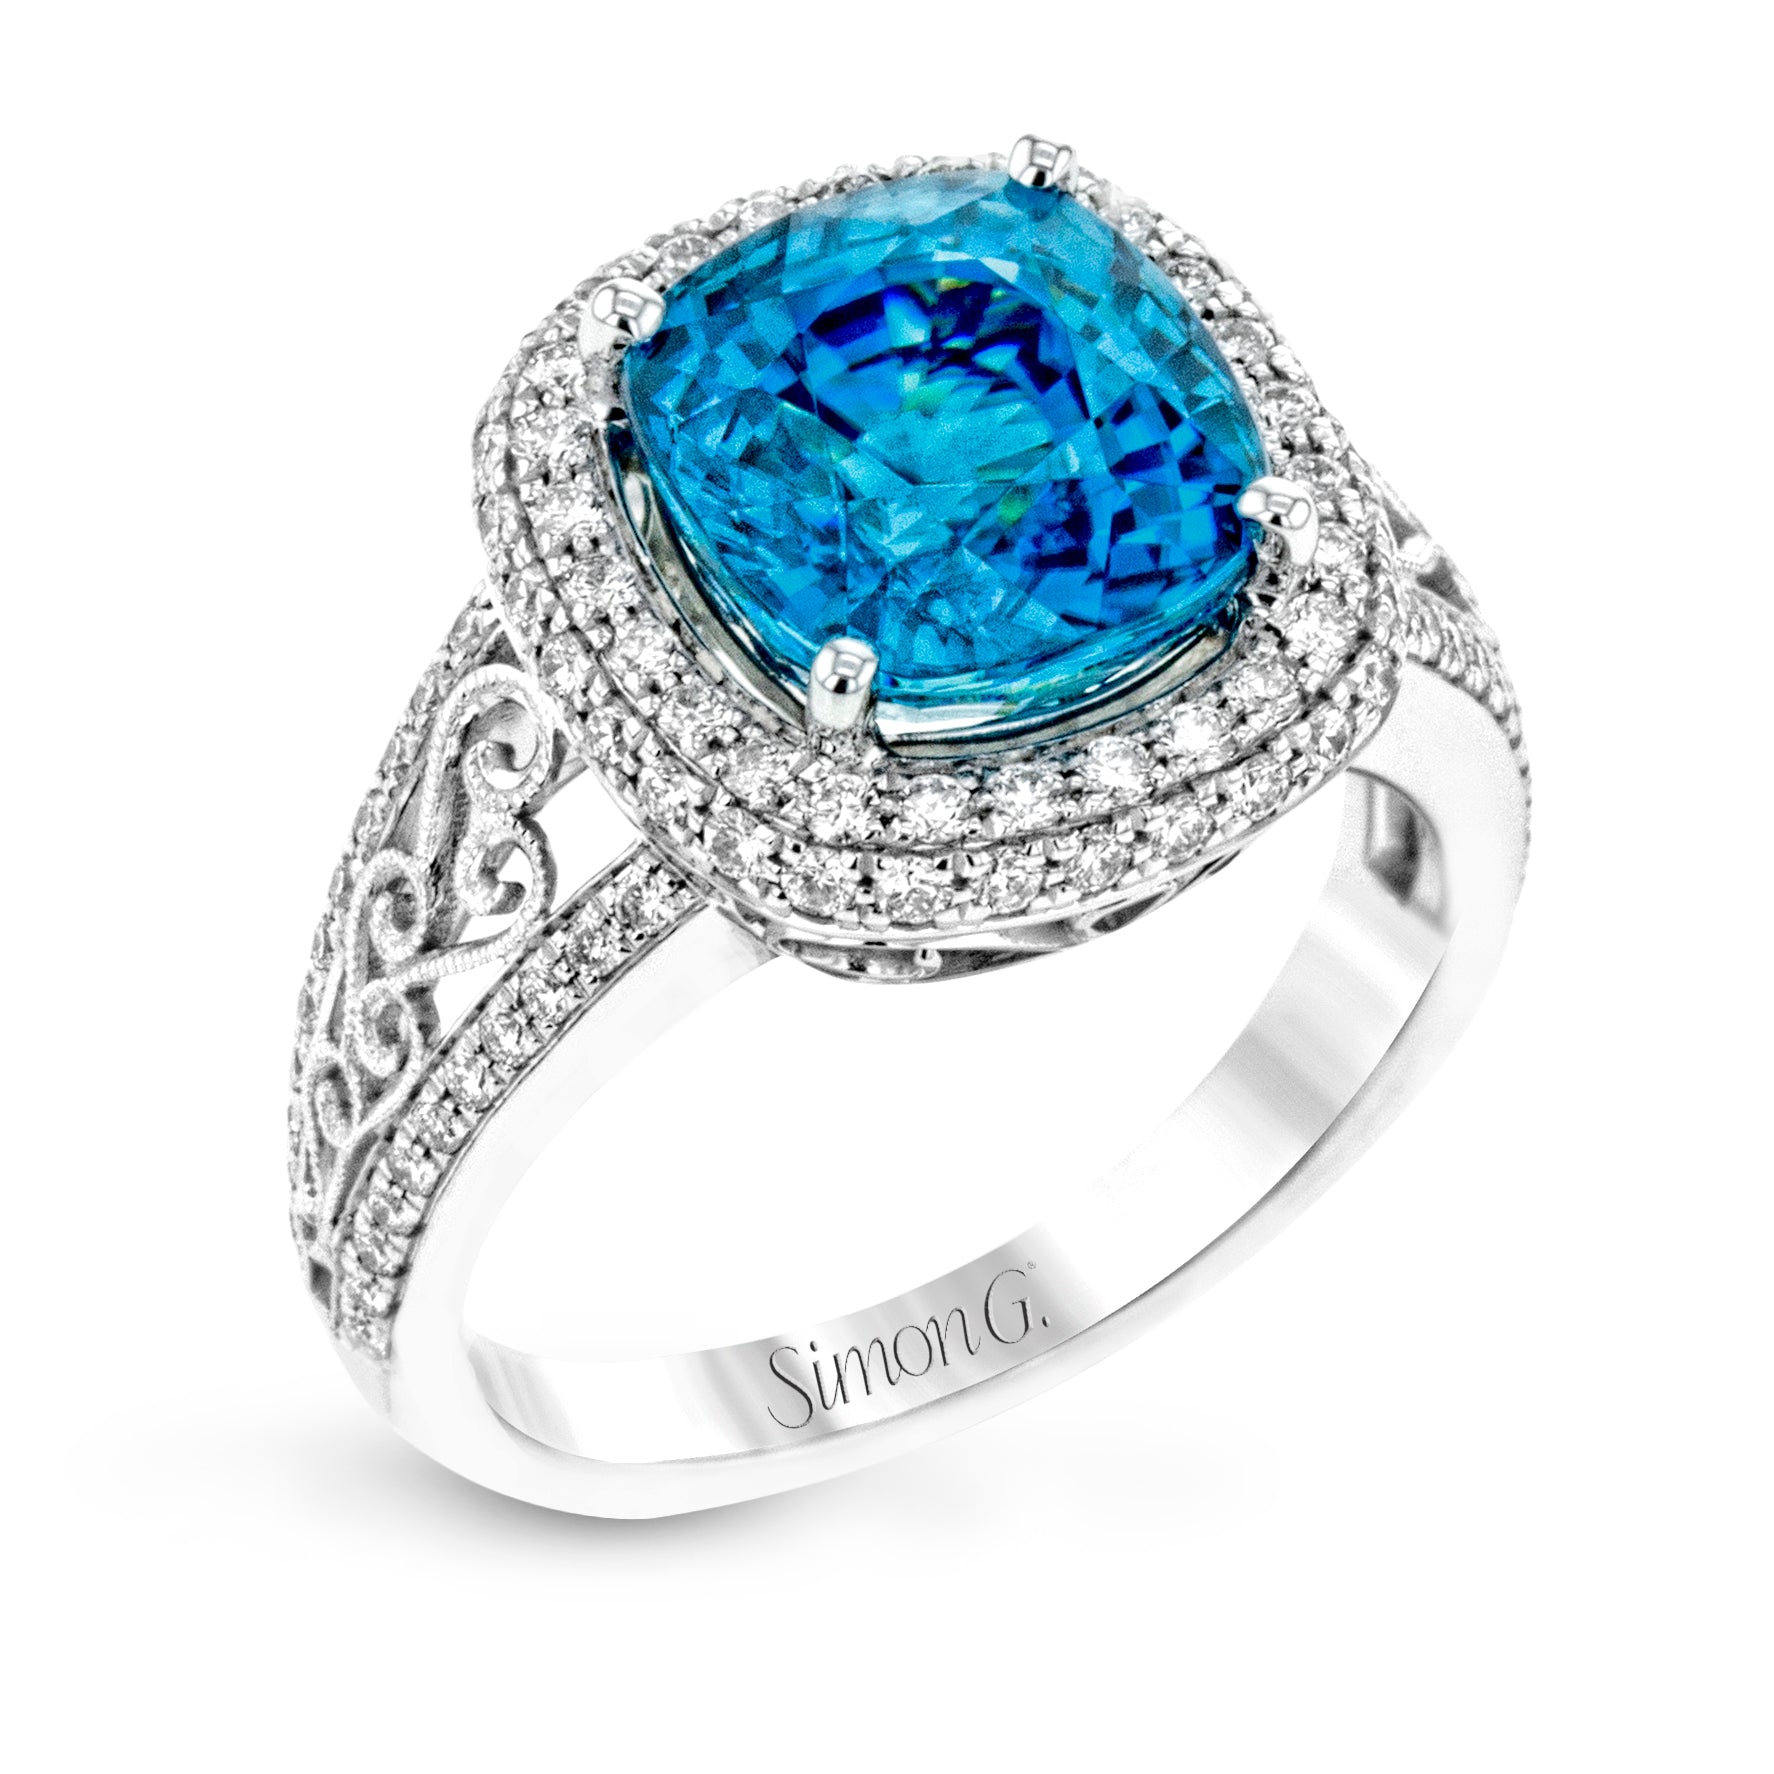 Simon G 18K White Gold Blue Zircon and Diamond Ring